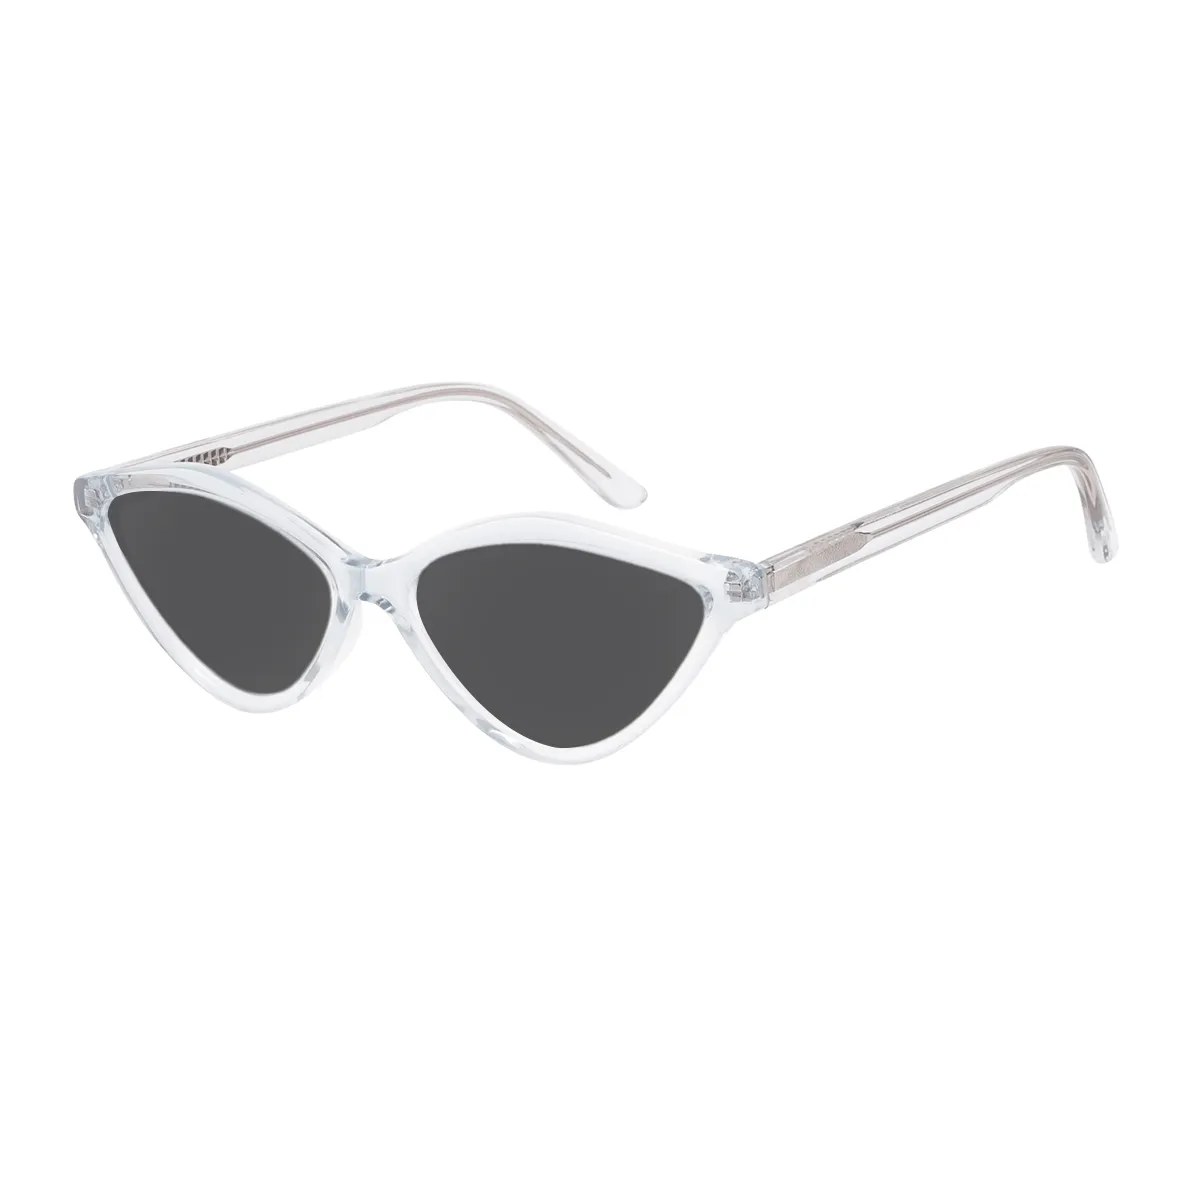 Aline - Cat-eye Translucent Sunglasses for Women